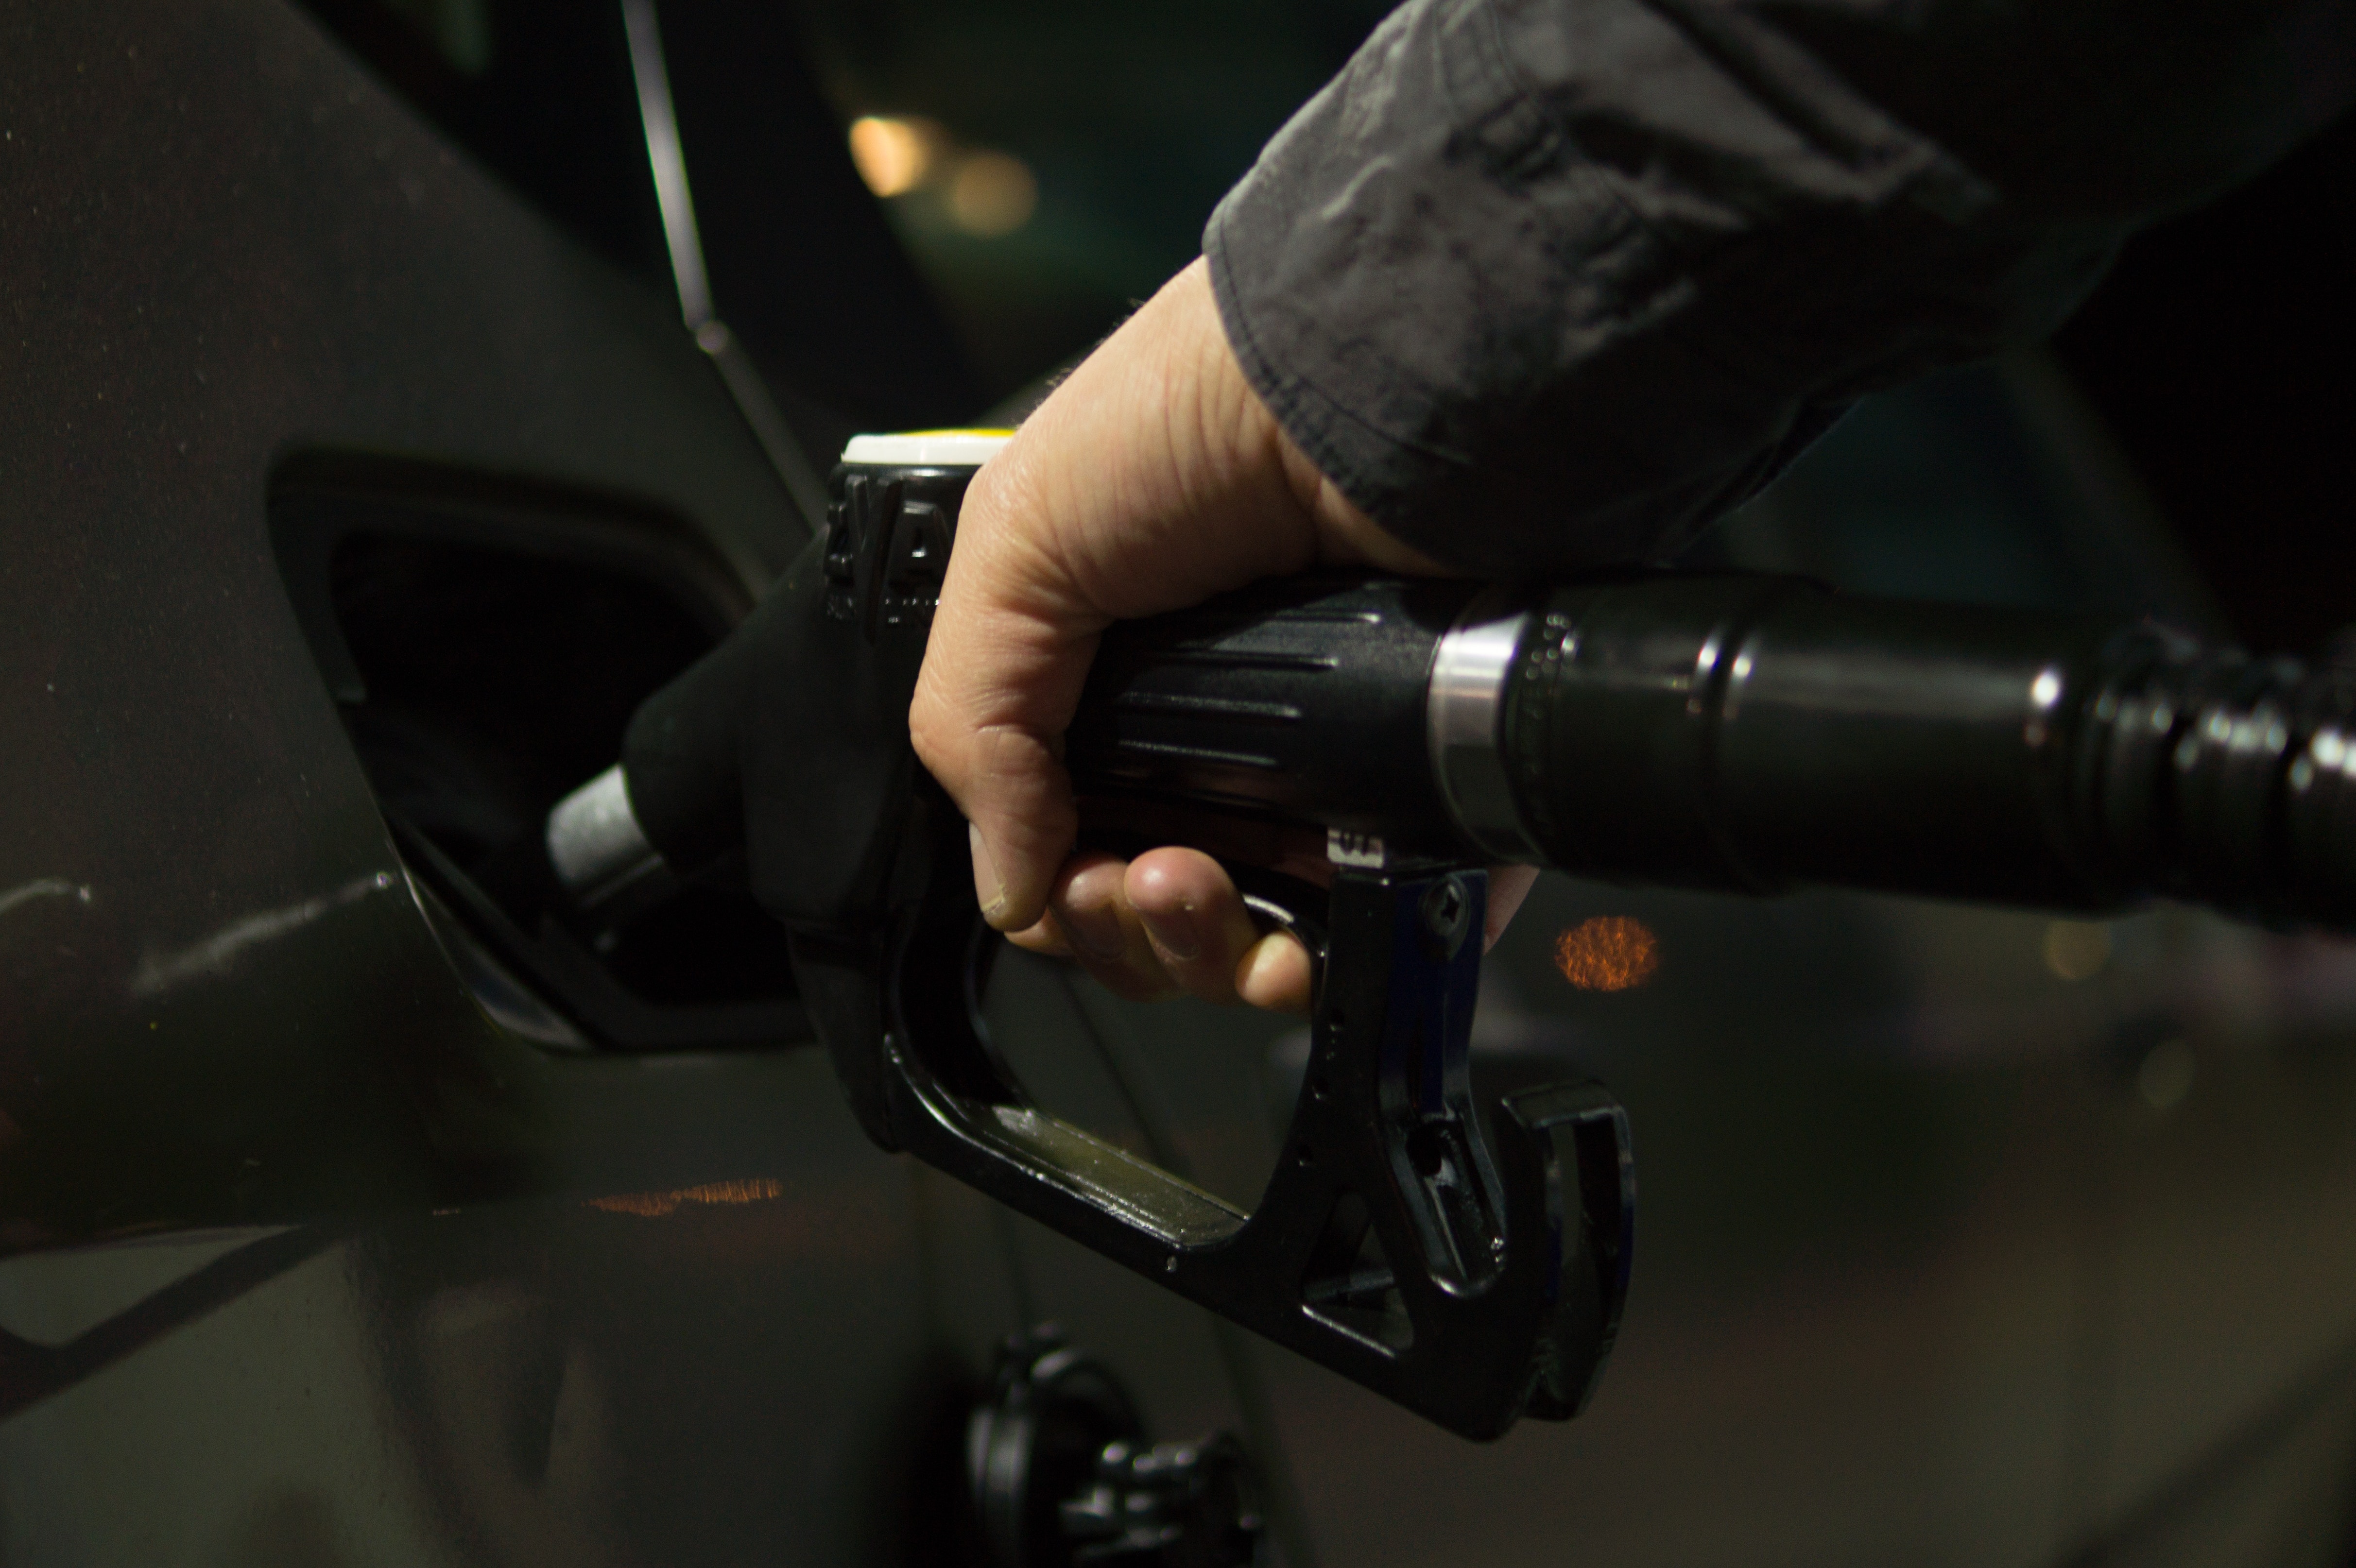 Росстат сообщил о снижении цен на бензин в стране вторую неделю подряд